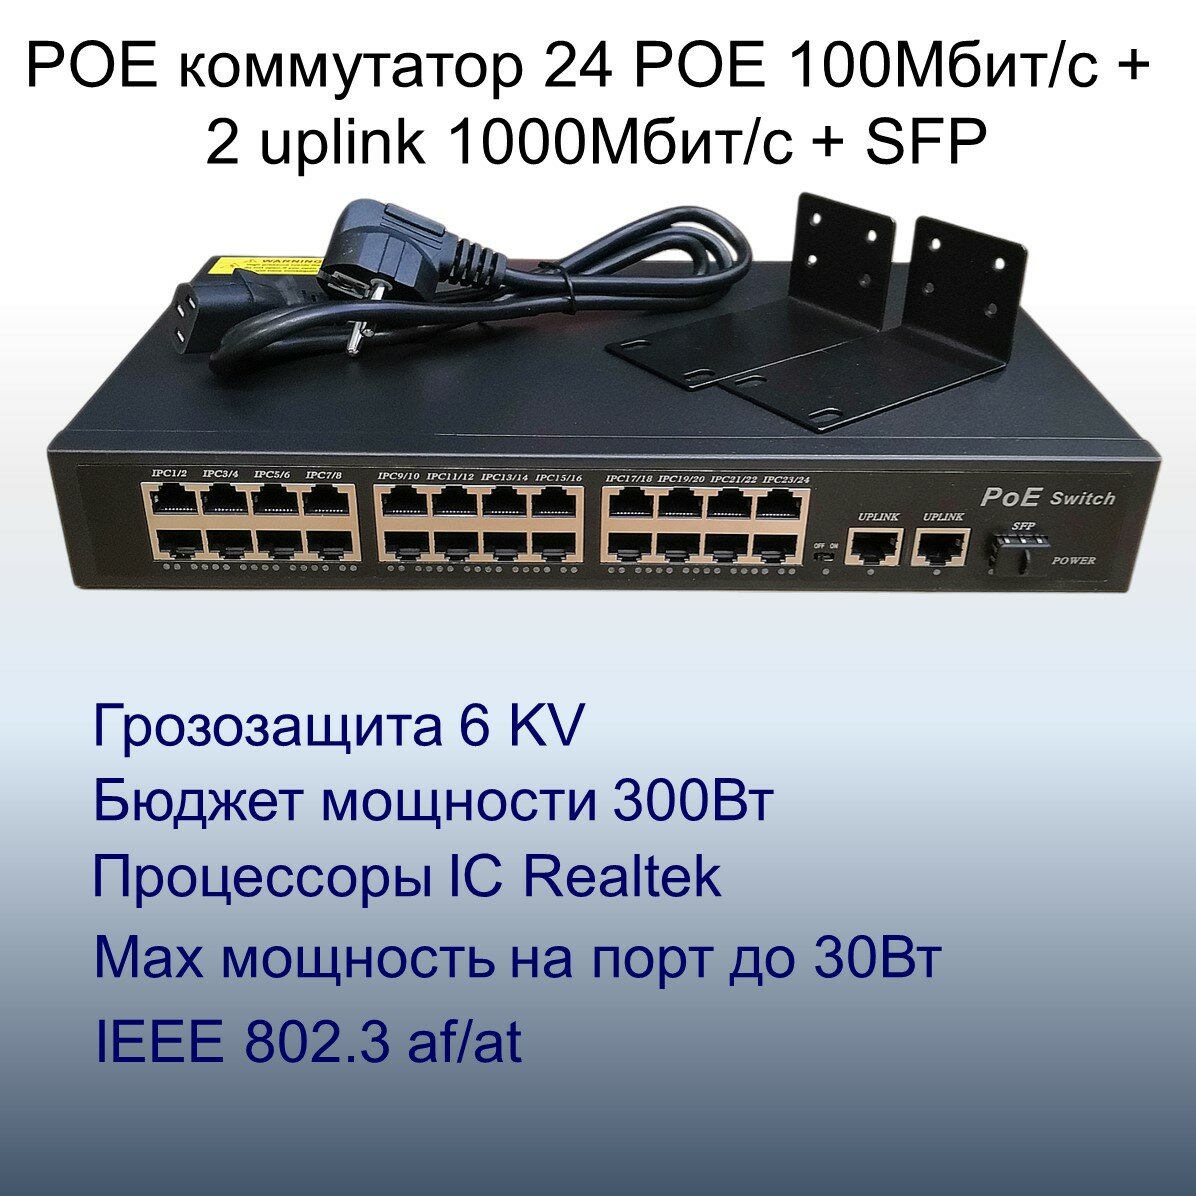 POE свитч с 24POE 100Мбит/с+2Uplink 1Гбит/с+SFP 1Гбит/с портов, бюджет 300Вт, грозозащита 6KV, до 250 метров